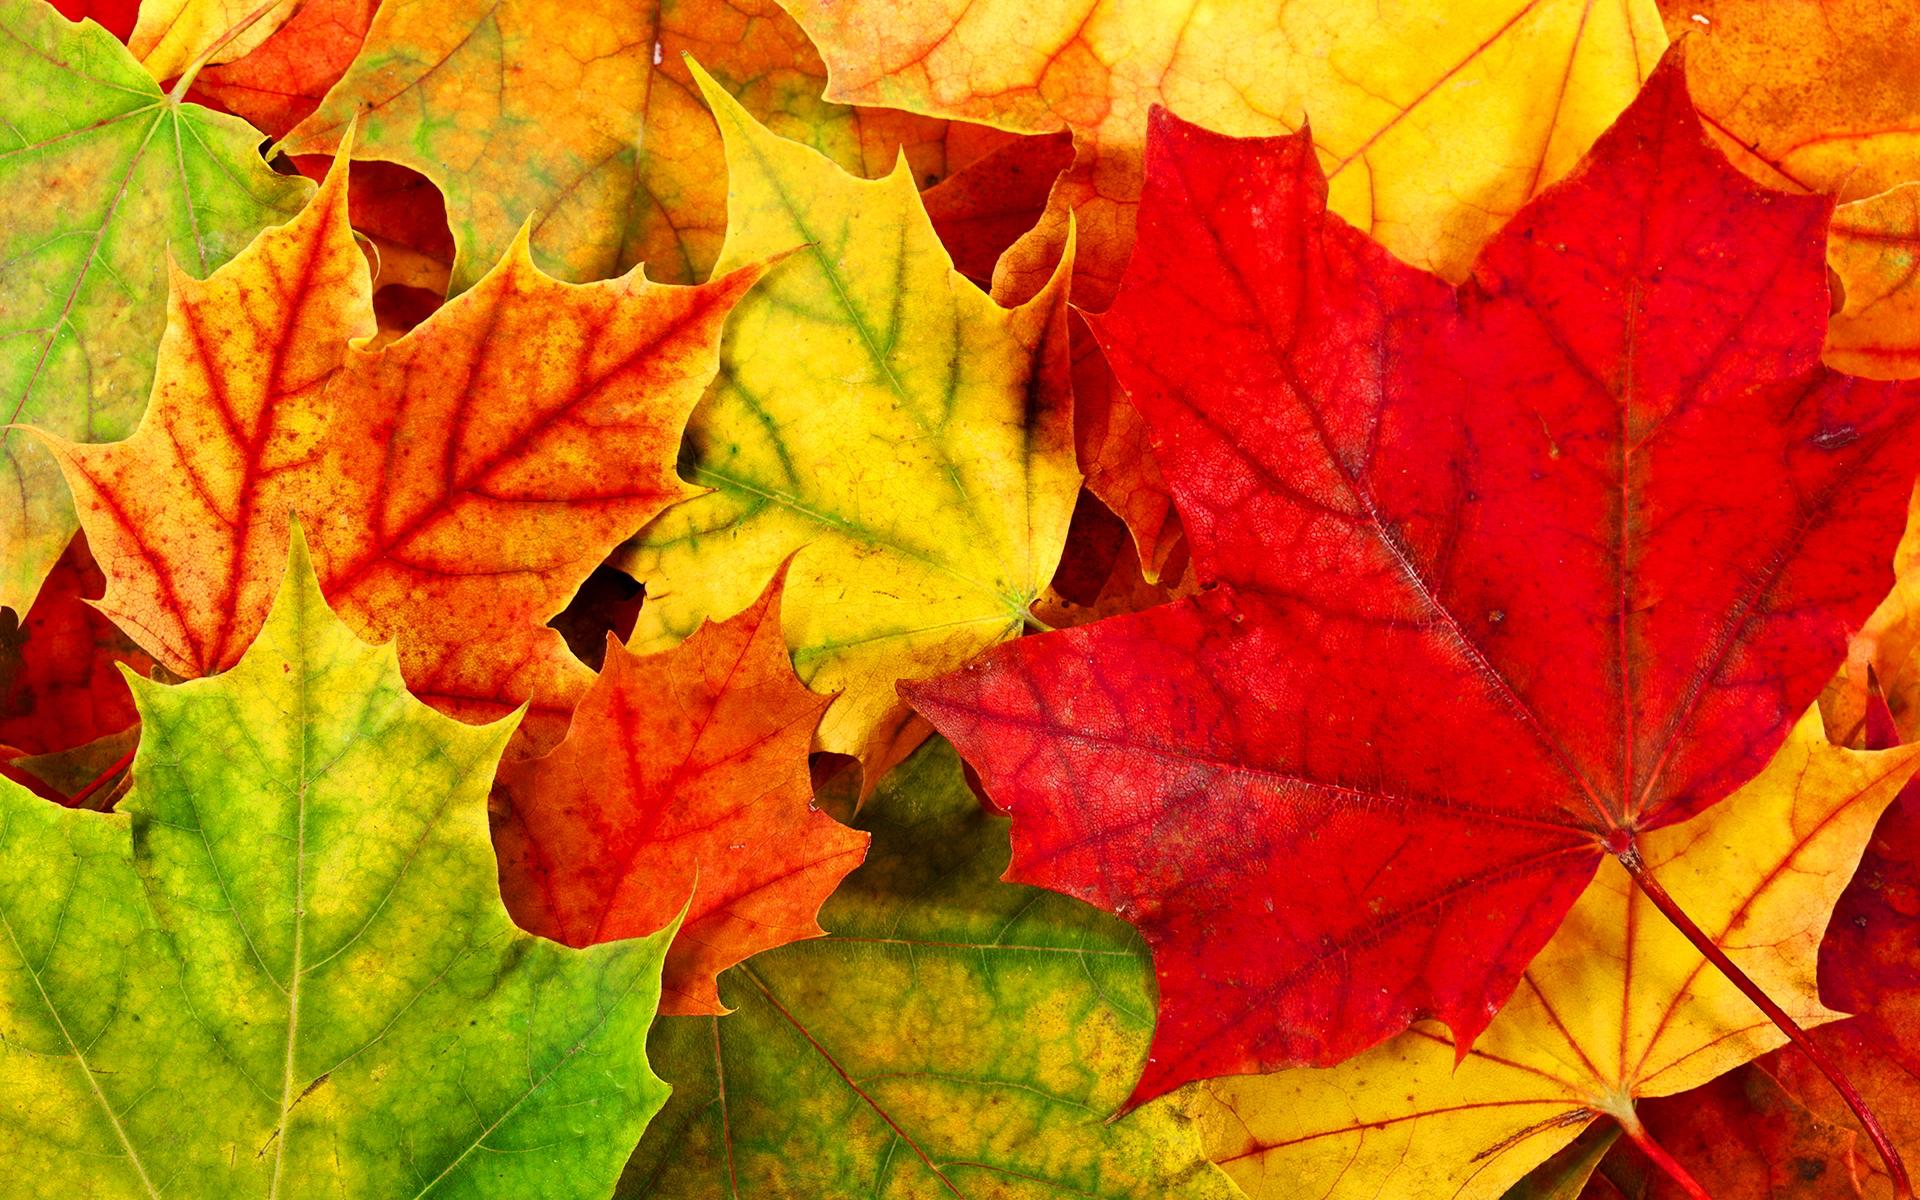 1920 x 1200 · jpeg - Autumn Leaves Desktop Wallpapers - Wallpaper, High Definition, High ...